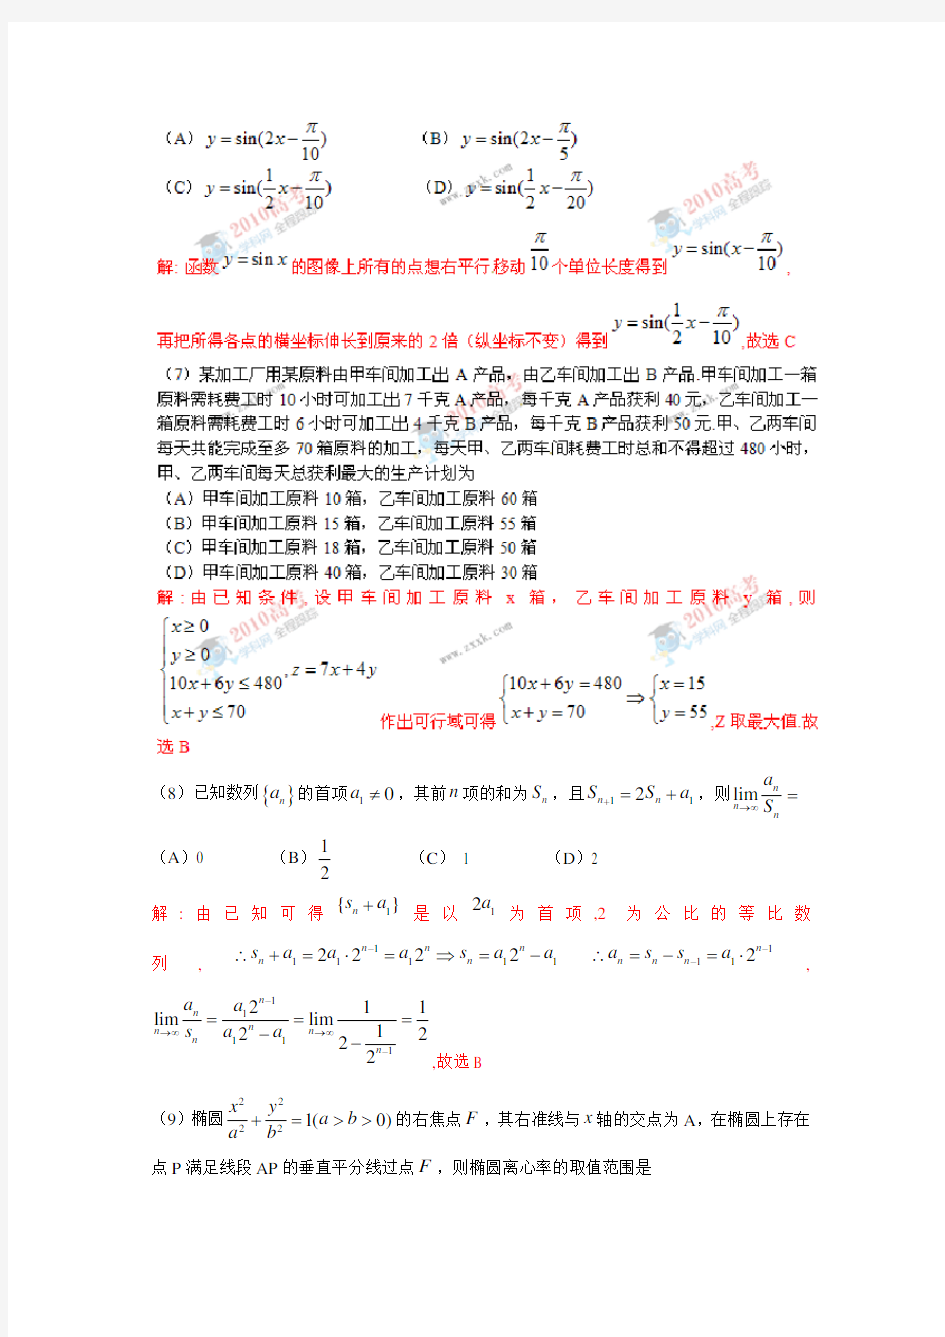 2010年高考理科数学(四川卷)全解析